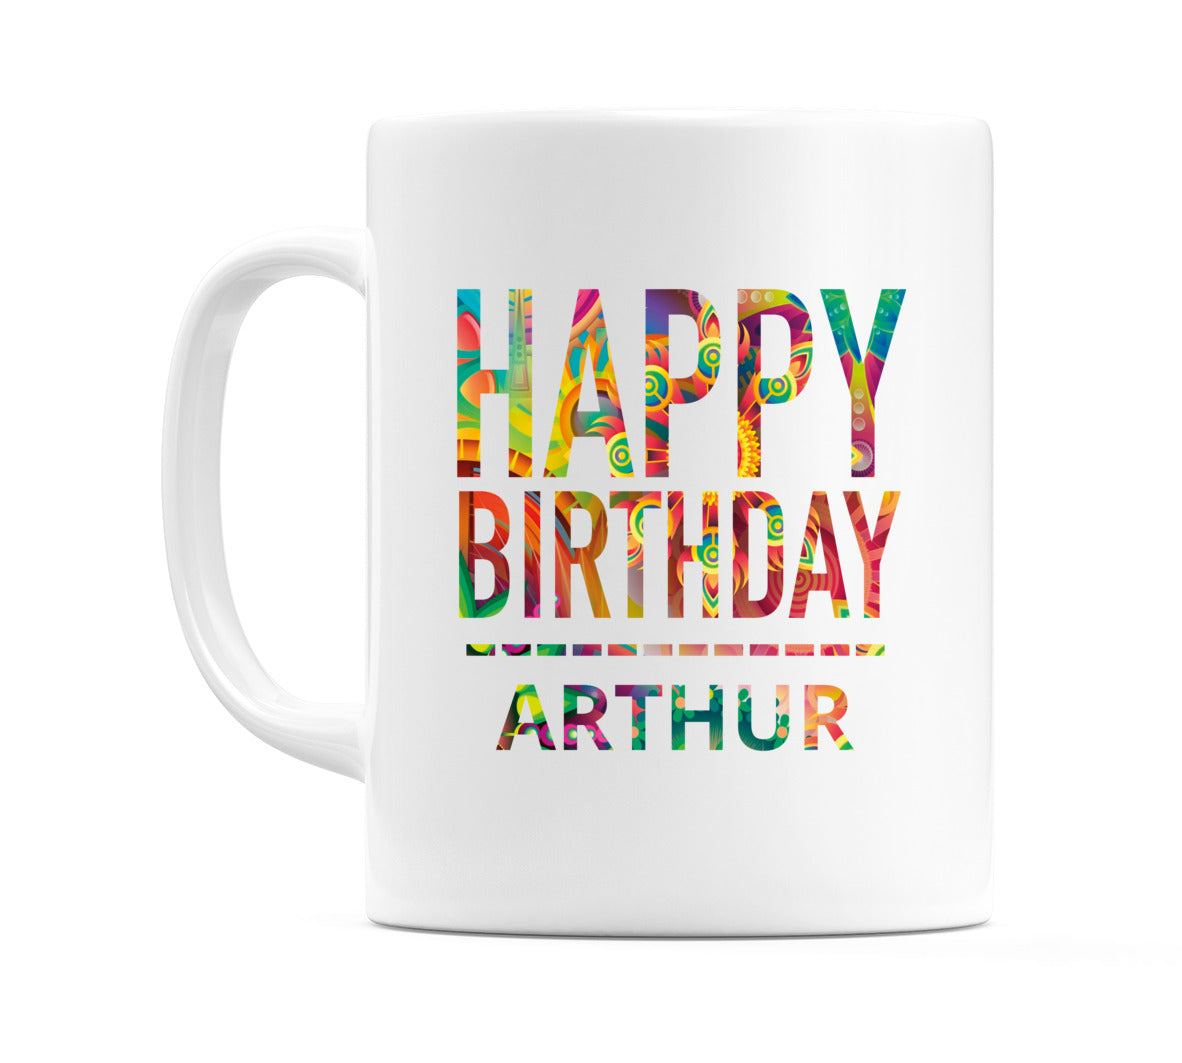 Happy Birthday Arthur (Tie Dye Effect) Mug Cup by WeDoMugs